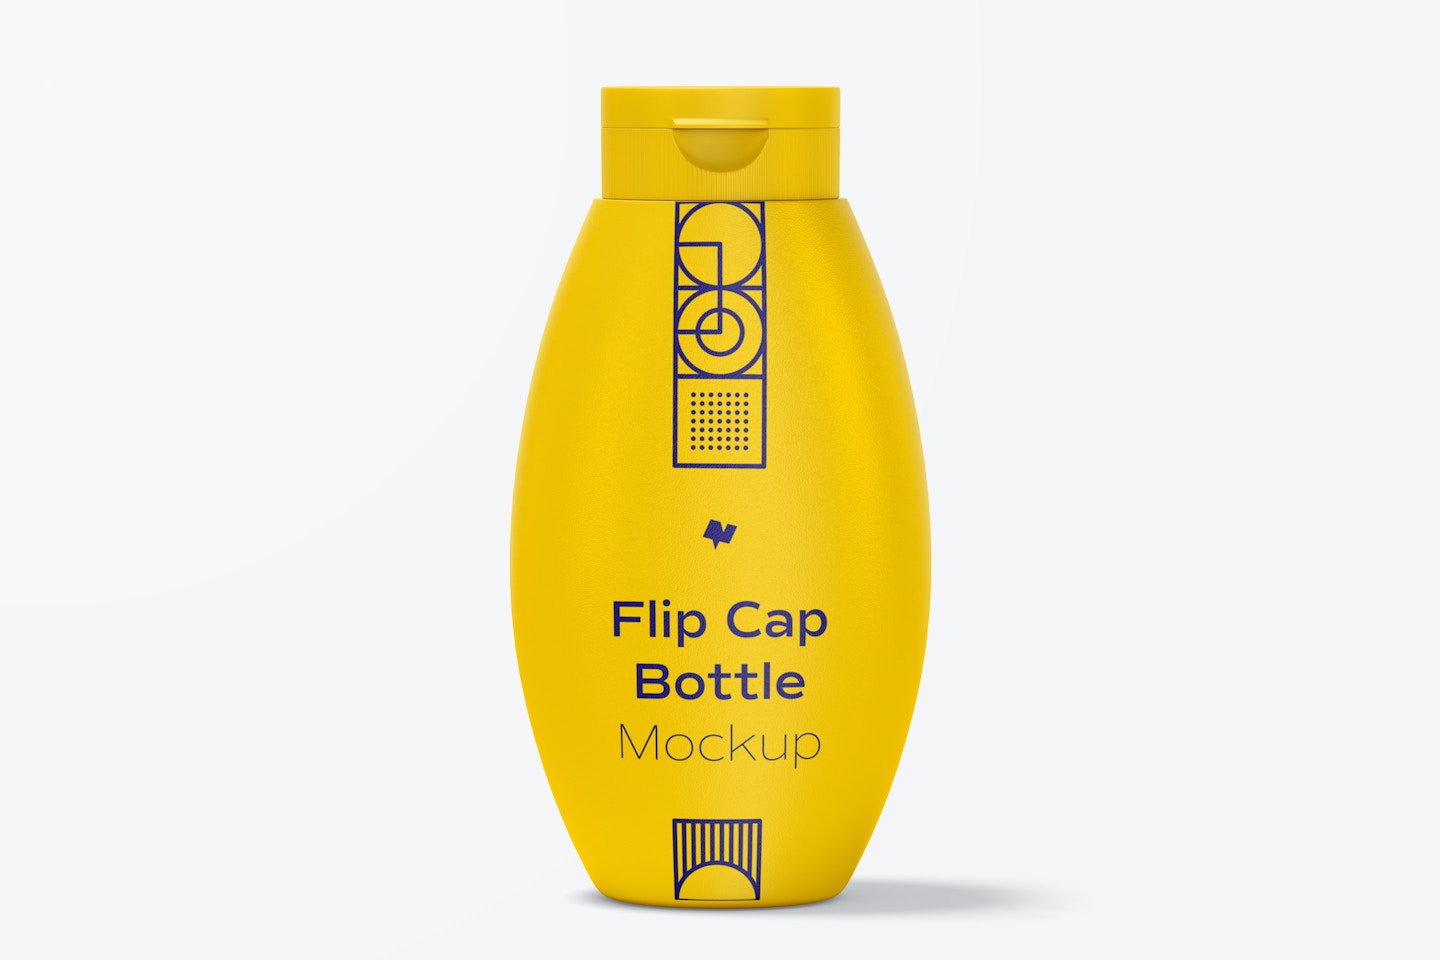 Flip Cap Bottle Mockup